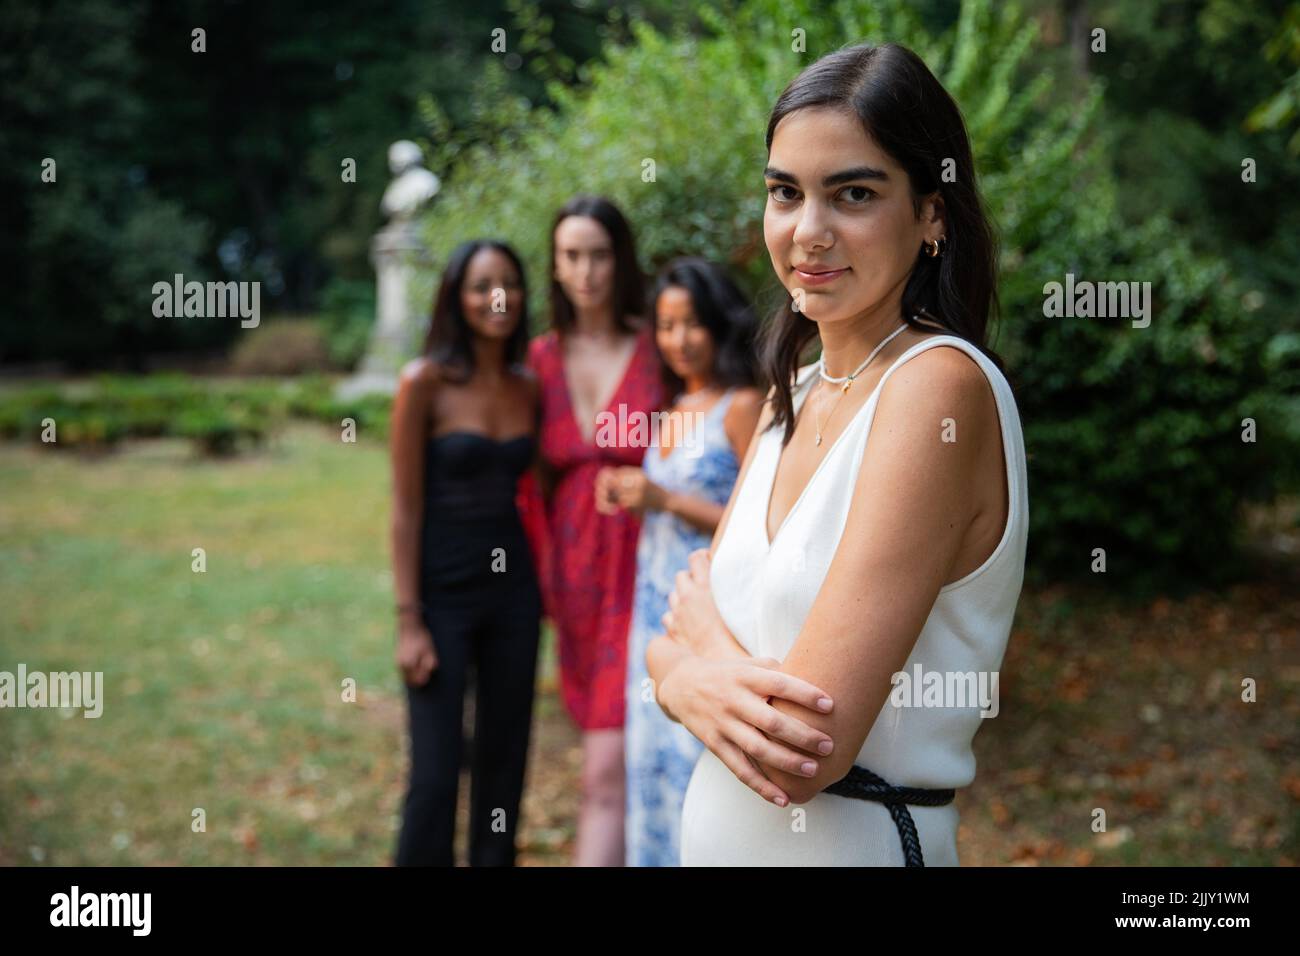 Primo piano di una ragazza caucasica isolata con i suoi amici di diverse etnie in background, concetto di donne e diversità Foto Stock